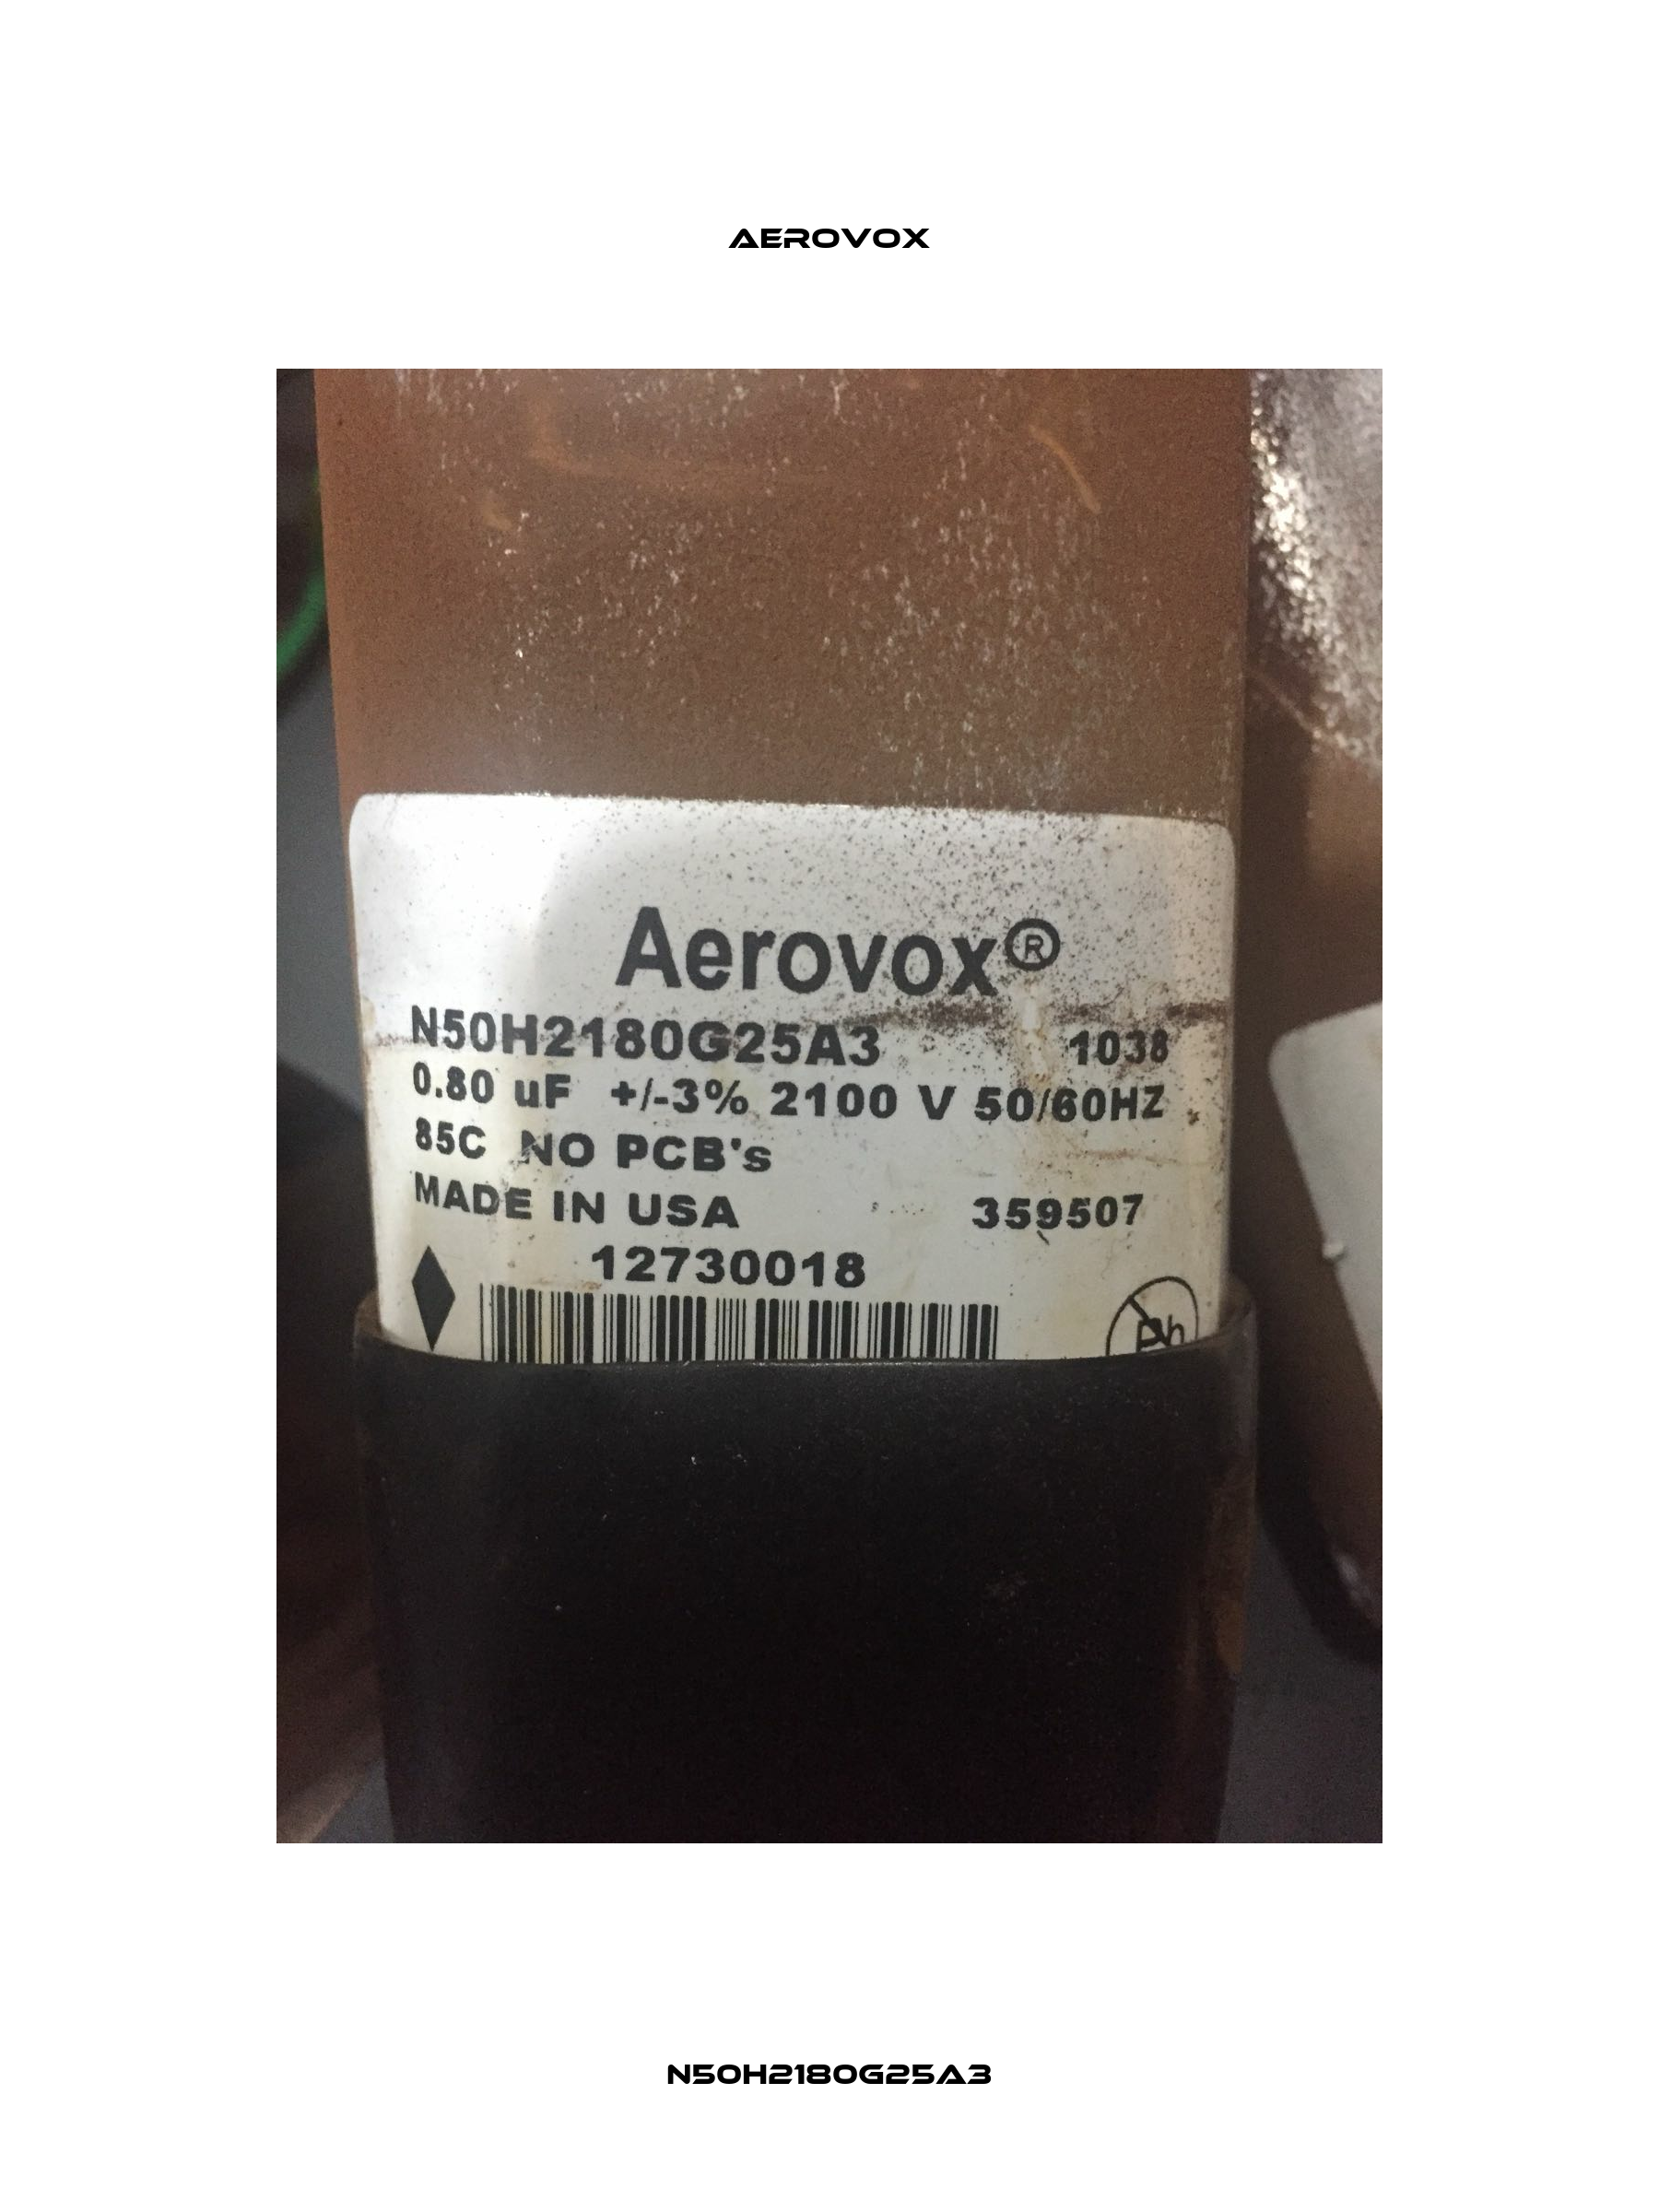 N50H2180G25A3 Aerovox